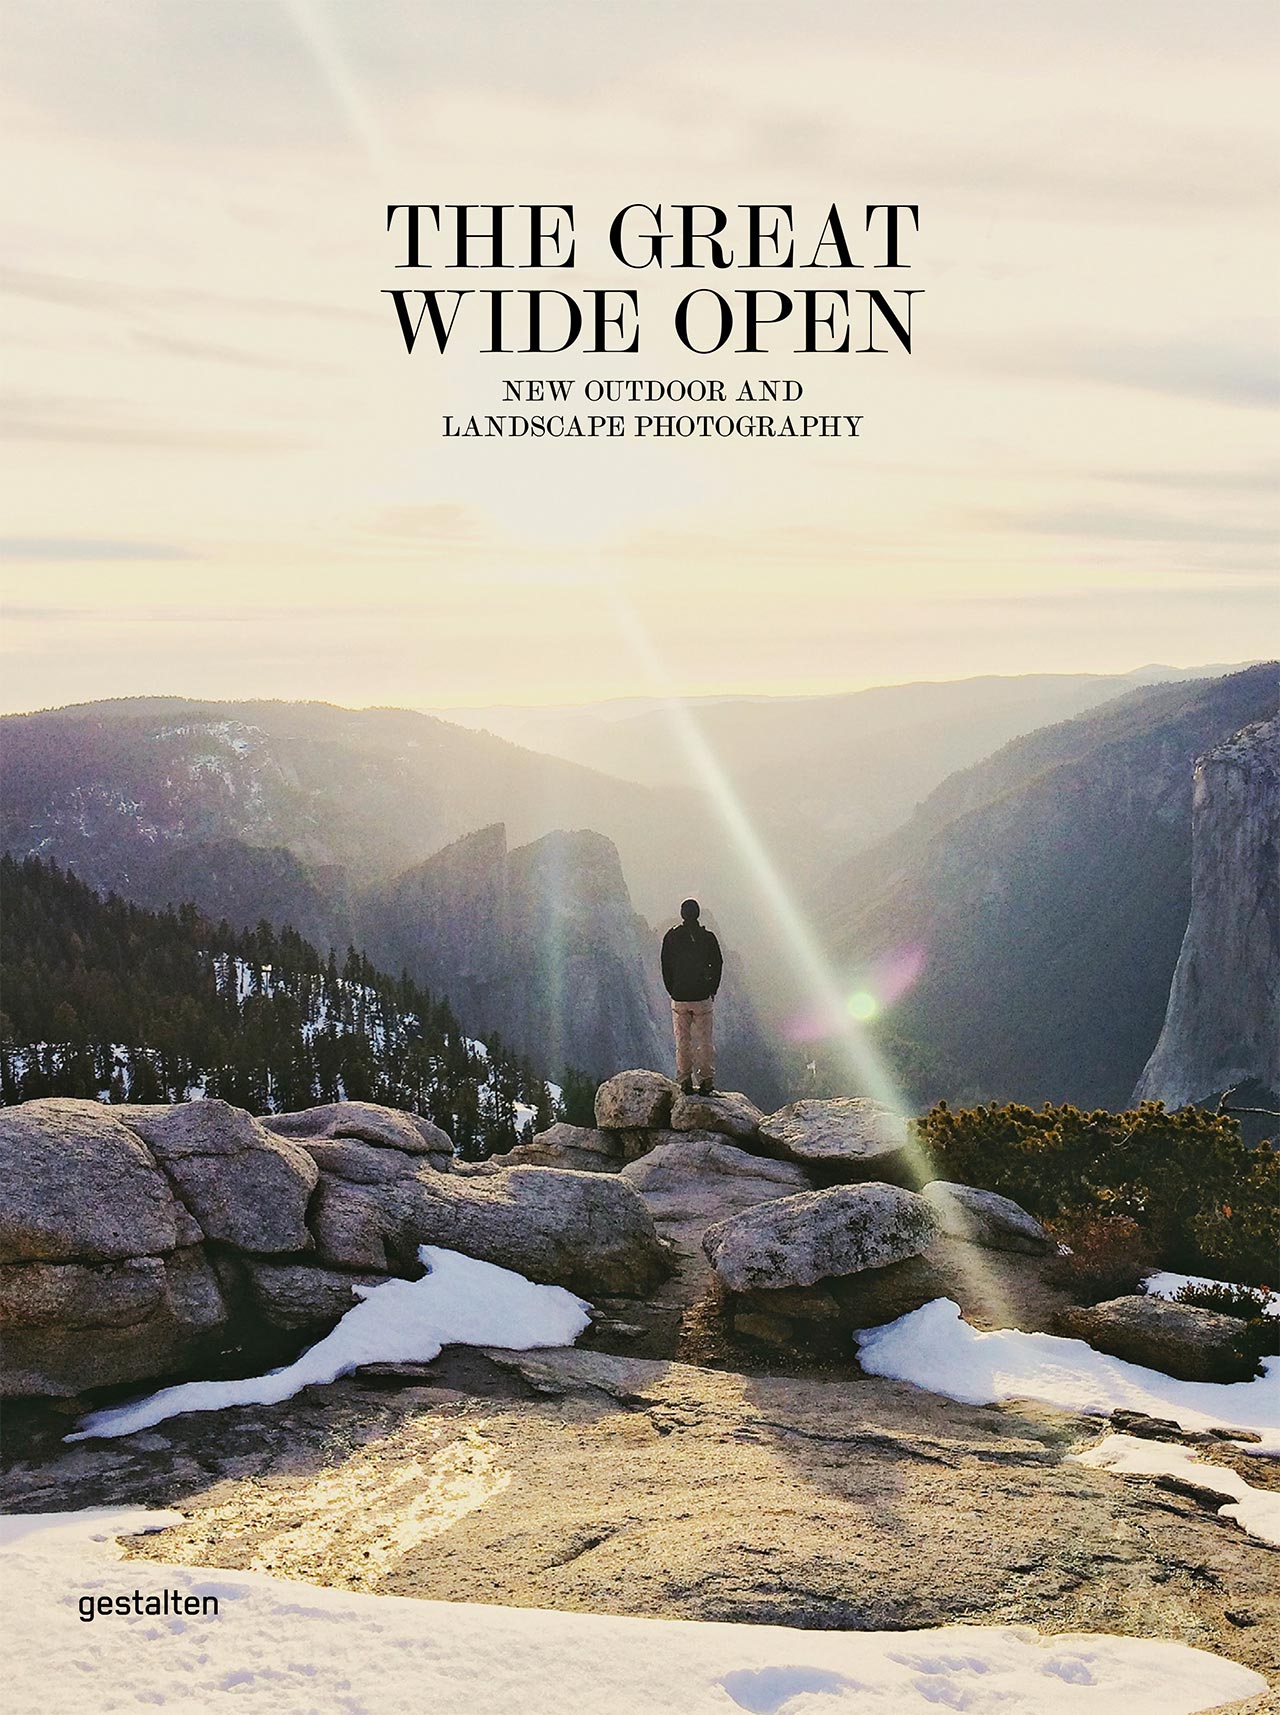 'The Great Wide Open'
Book Cover
© Gestalten 2015.